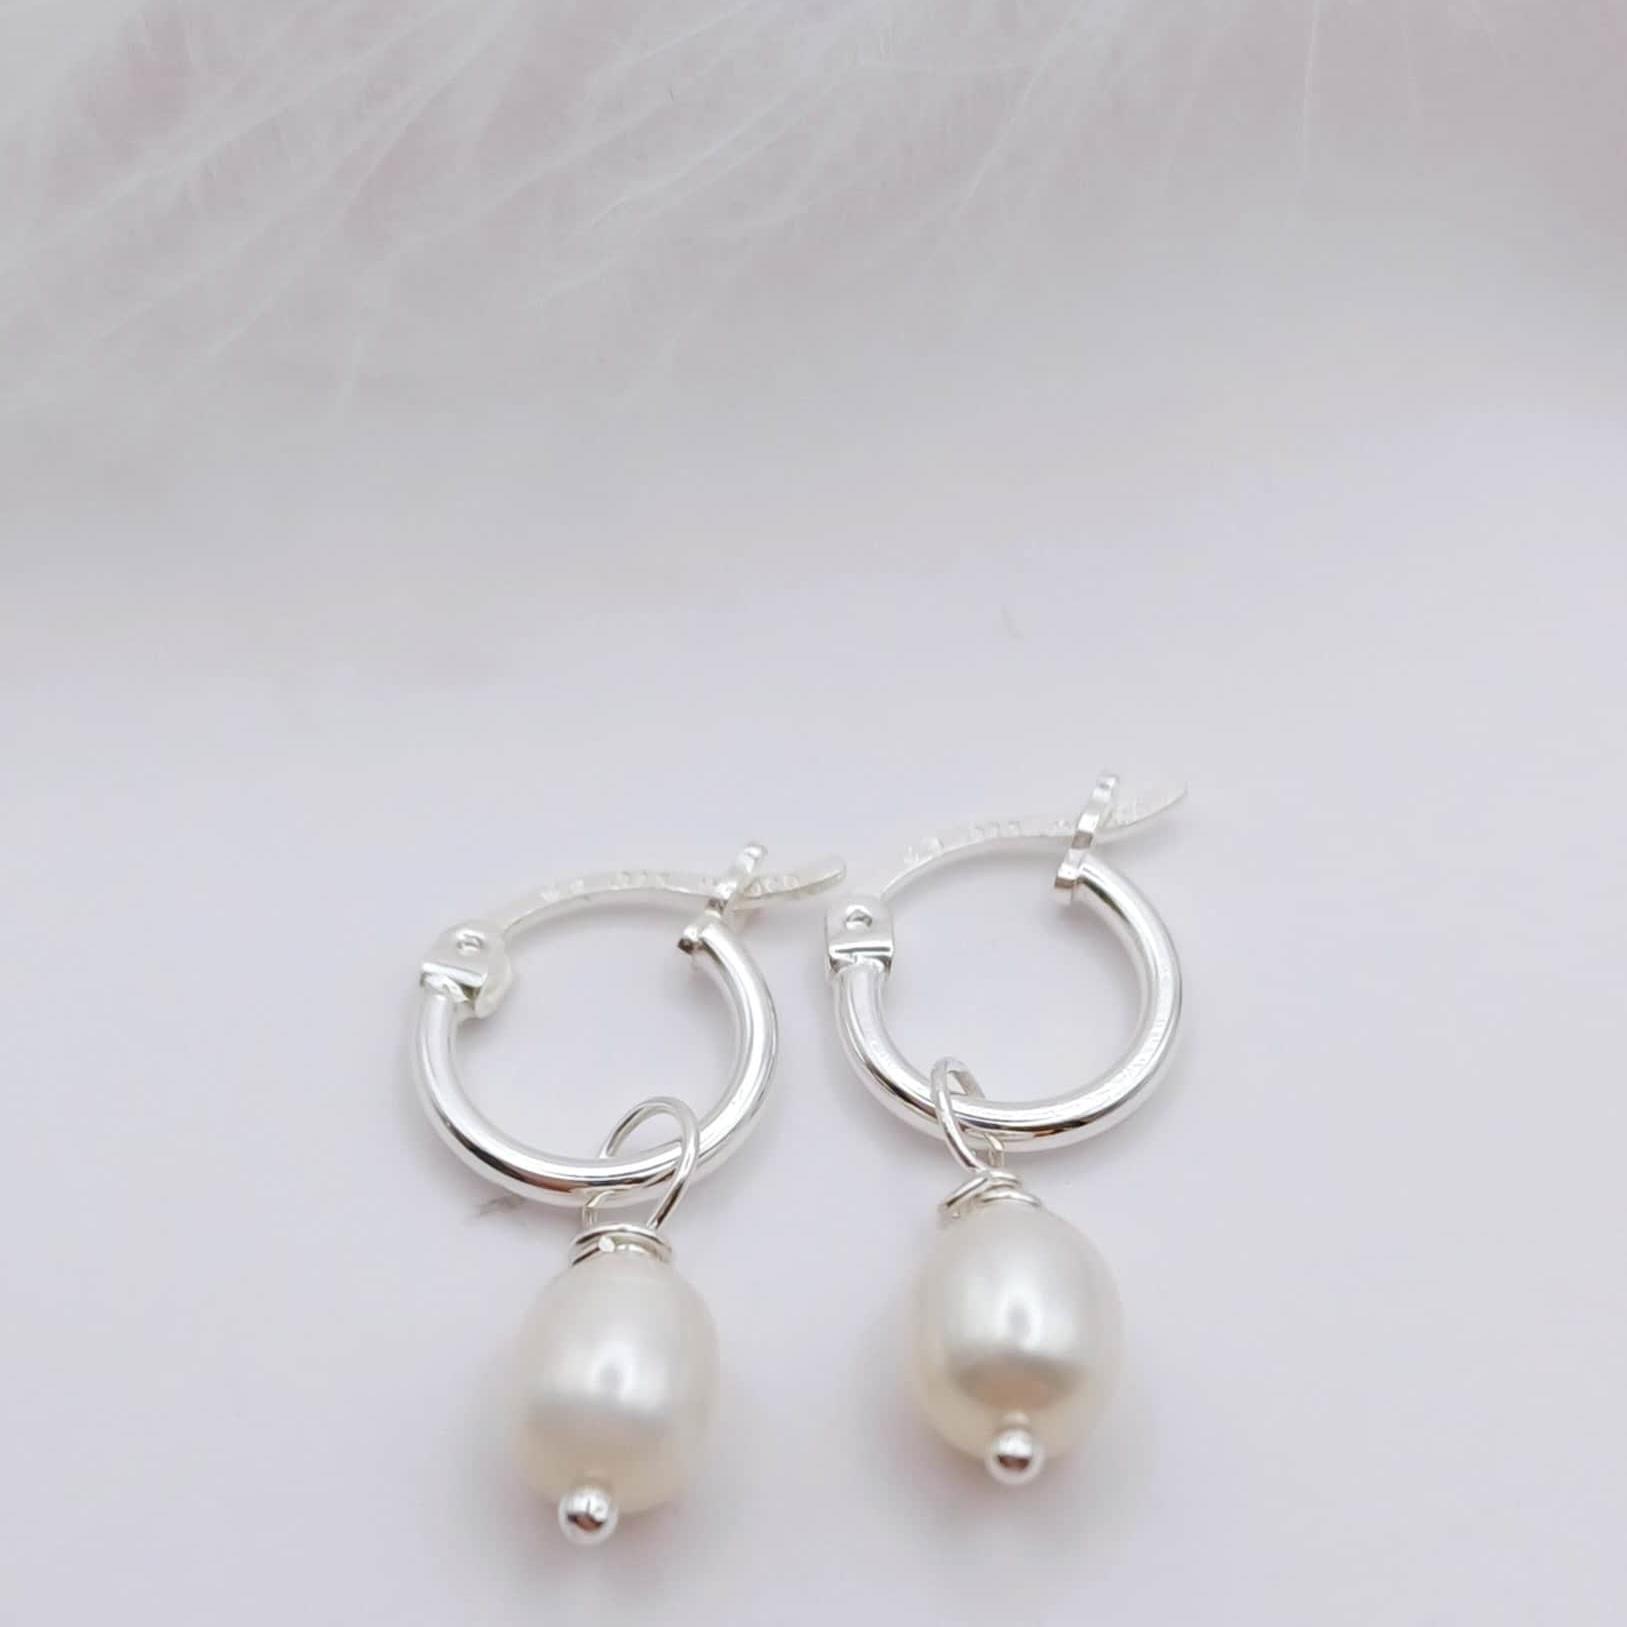 EARRINGS - Sterling Silver Hinged Hoop Pearl Earrings